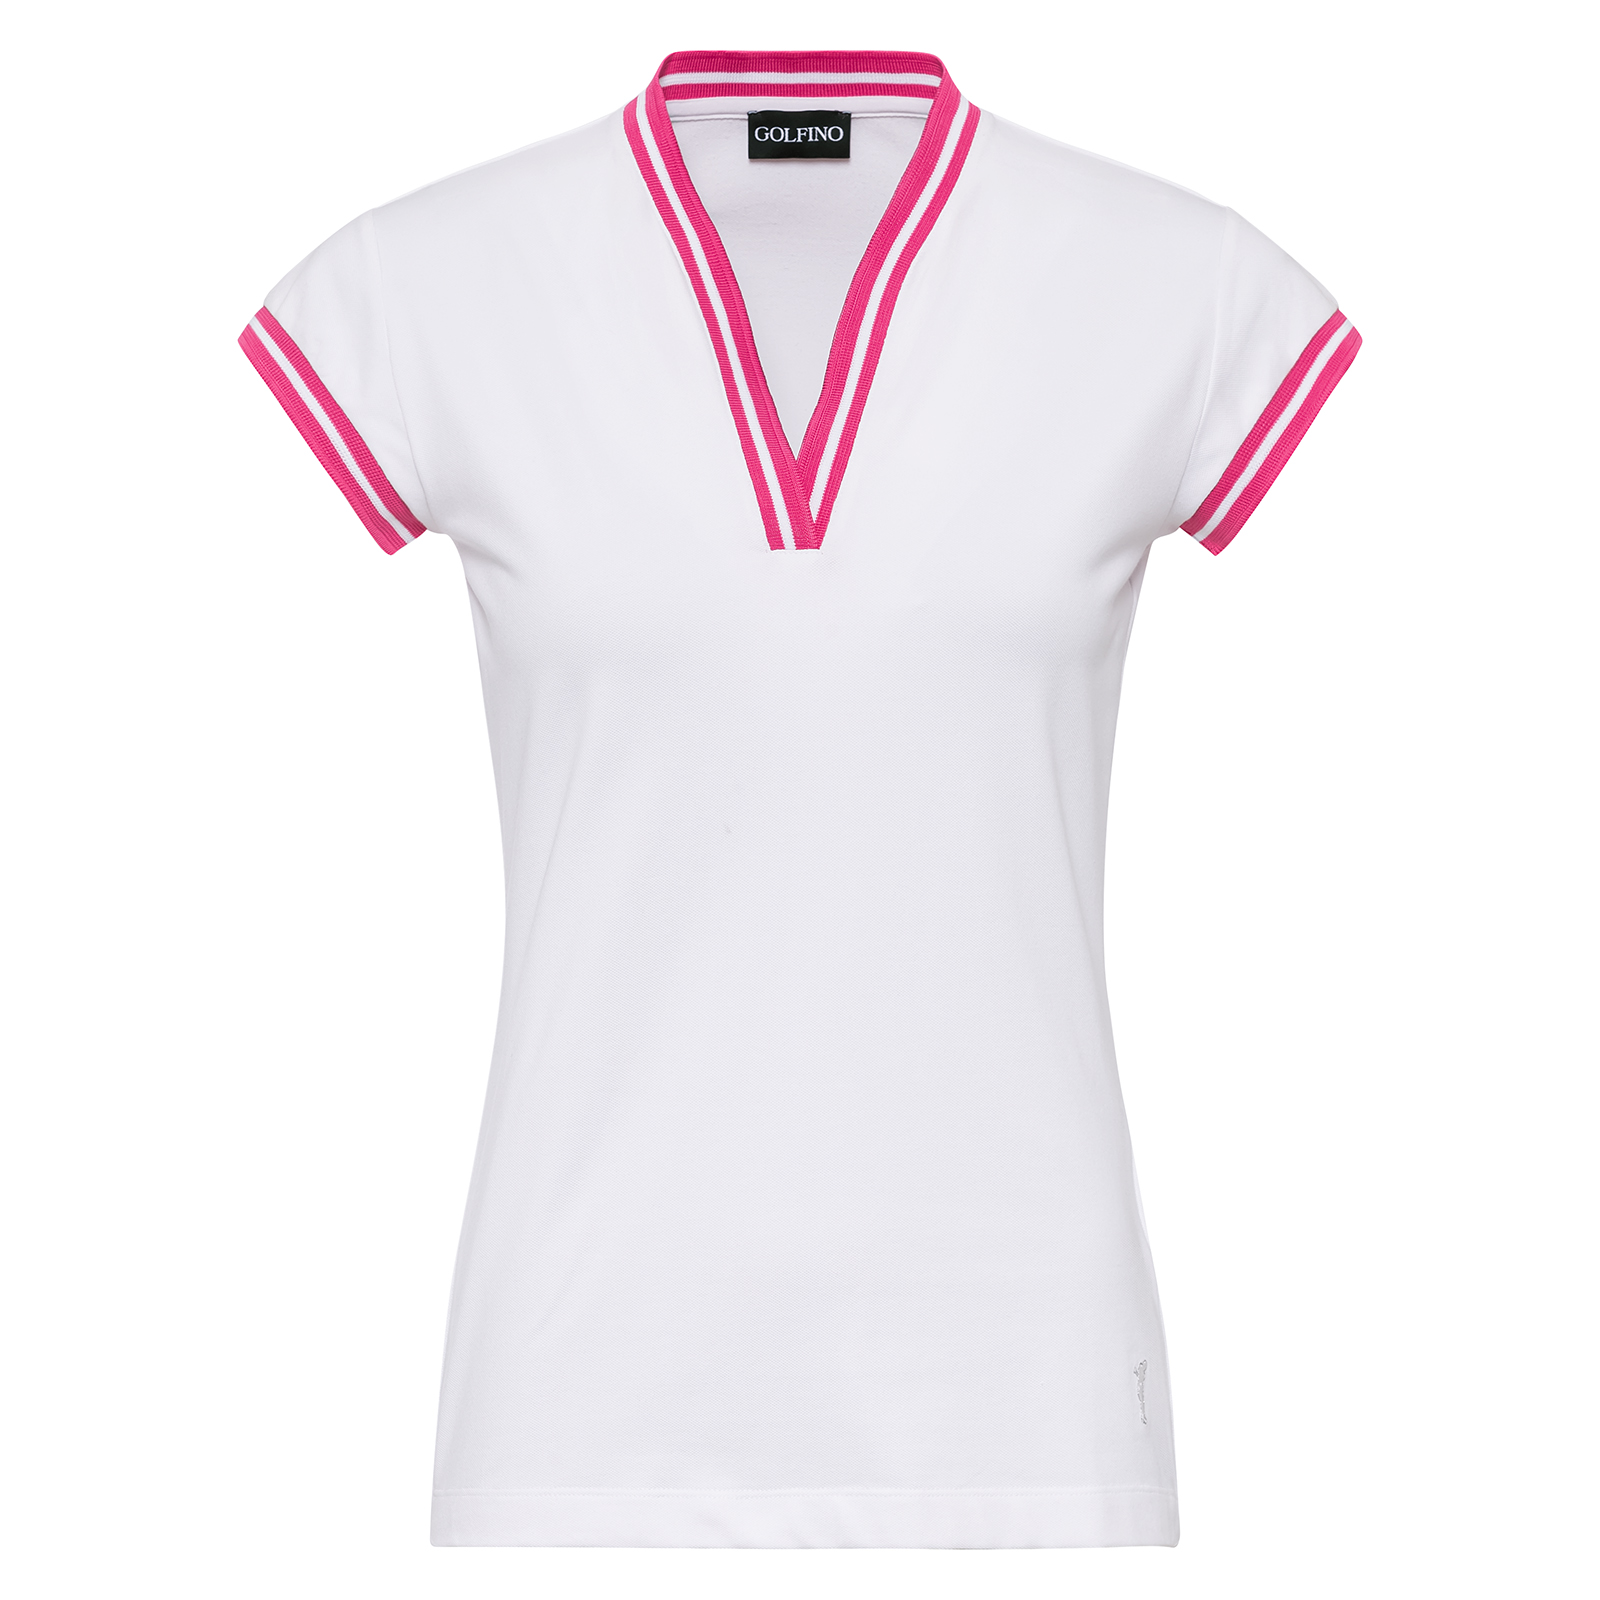 Damen Golf Shirt mit UV-Schutz